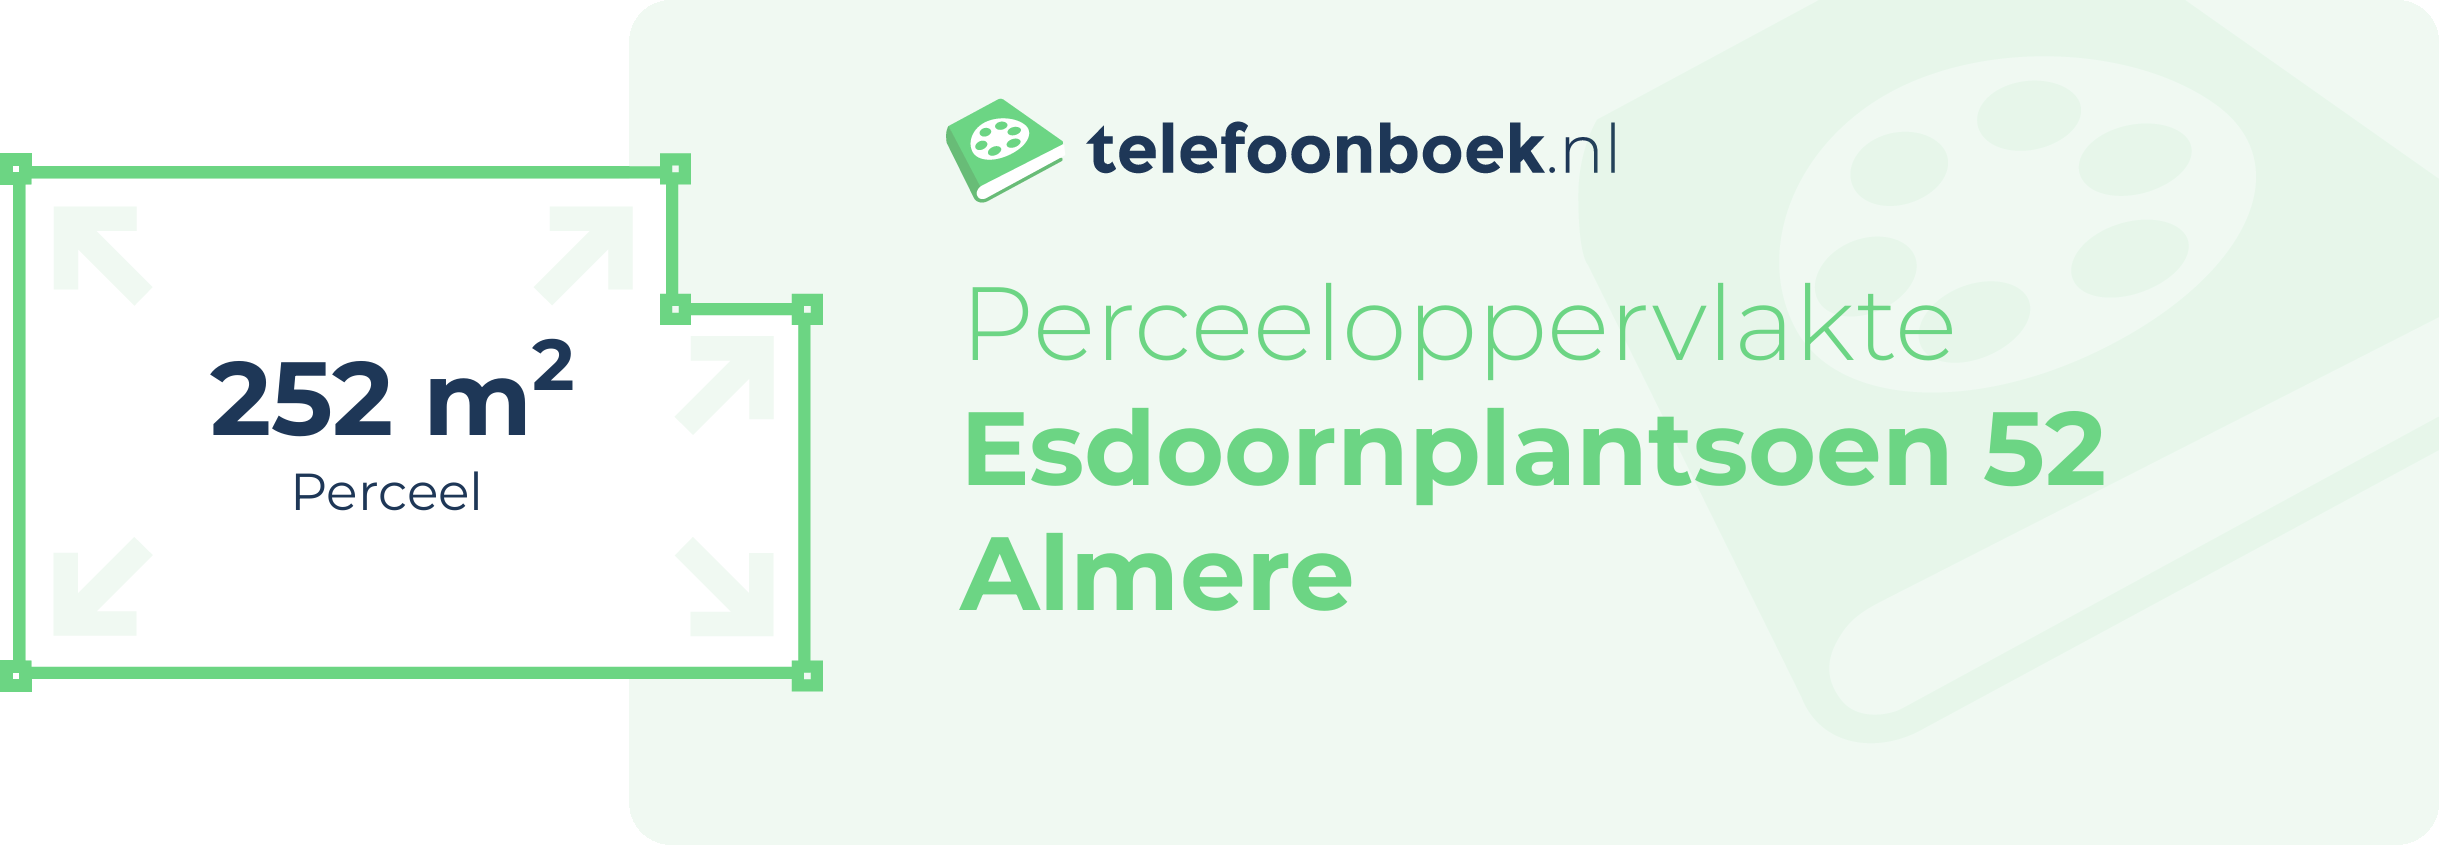 Perceeloppervlakte Esdoornplantsoen 52 Almere